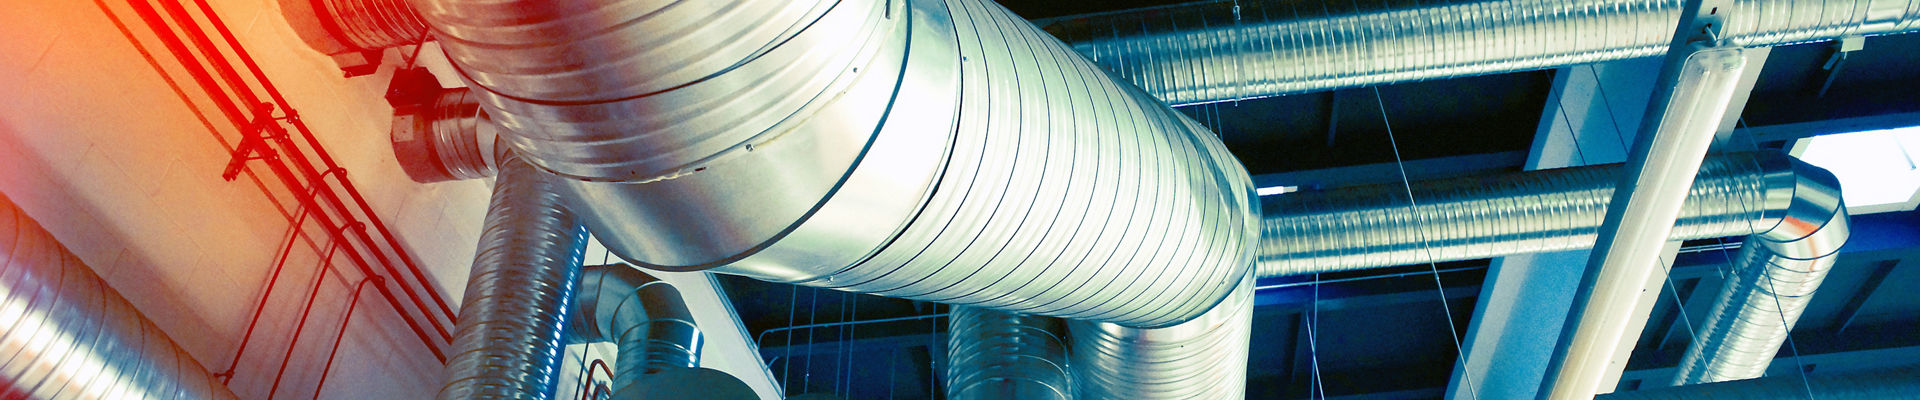 Sistema de tubulações de ventilação industrial